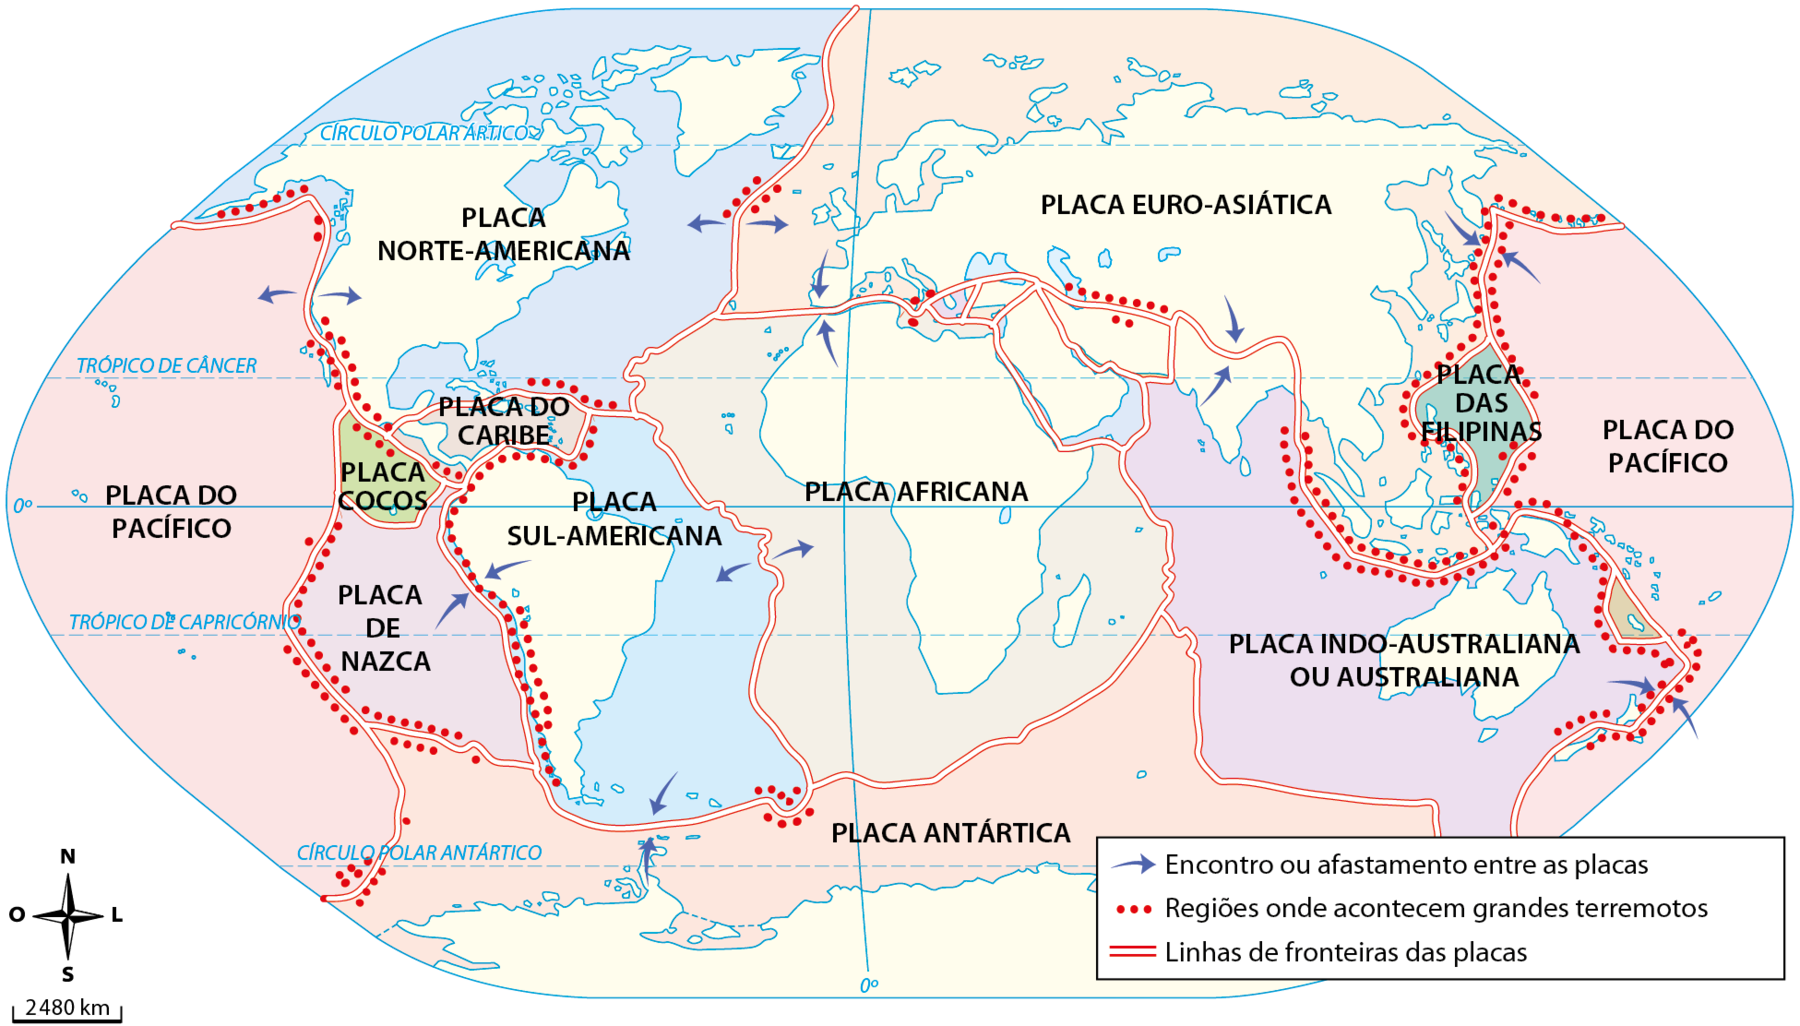 Mapa. Planisfério mostrando os continentes e a toda litosfera dividida em placas. Da esquerda para a direita: Placa do Pacífico, Placa de Nazca, Placa Cocos, Placa Norte-Americana, Placa do Caribe, Placa Sul-Americana, Placa Africana, Placa Antártica, Placa Euro-asiática, Placa das Filipinas, Placa Indo-Australiana ou Australiana e Placa do Pacífico. Setas azuis indicam o encontro ou o afastamento entre as placas. Linhas pontilhadas indicam regiões onde acontecem grandes terremotos: entre a placa do Pacífico e a placa de Nazca. Entre a placa Nazca e o sul a costa oeste da Placa Sul-Americana. Entre a placa do Pacífico com a Placa Norte-Americana. Entre a placa Cocos e a Placa do Caribe. Pequeno trecho entre a Placa Norte-Americana e a Placa Euro-Asiática. Pequeno trecho entre a Placa Sul-Americana e a Placa Antártica. Ao redor da Placa das Filipinas e entre a Placa Australiana e a Placa Euro-Asiática e Placa do Pacífico. Há linhas duplas vermelhas indicando as linhas de fronteiras das placas. No canto inferior esquerdo, rosa dos ventos e barra de escala indicando que 1 centímetro corresponde a 1 mil quatrocentos e oitenta quilômetros.